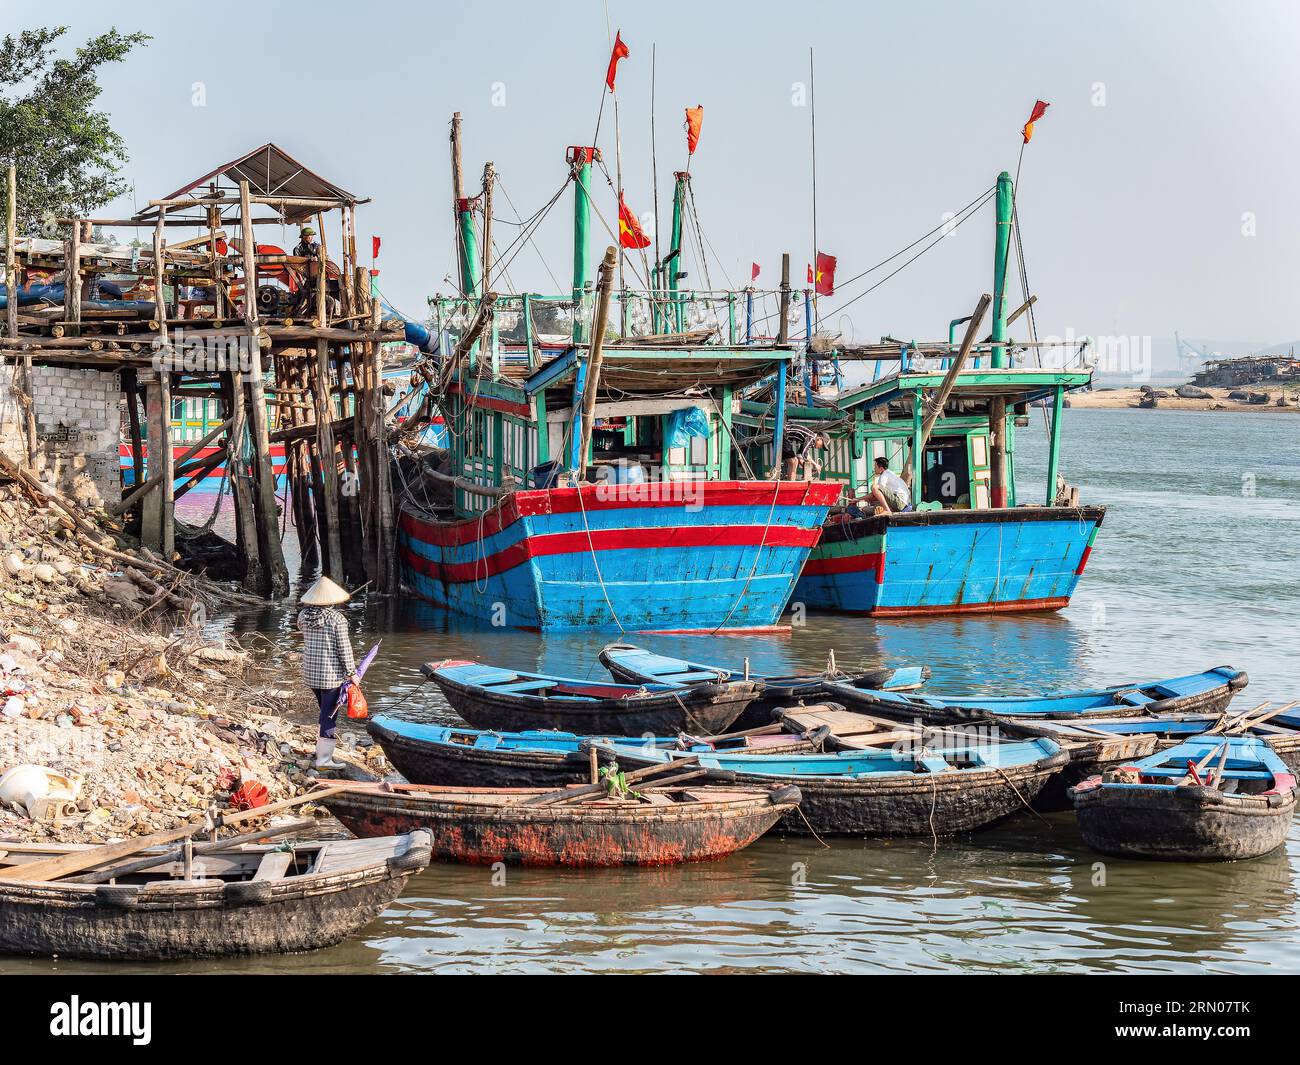 Bateaux de pêche et pêcheurs dans un port de Hai Thanh, un village de la province de Thanh Hoa au Vietnam. Banque D'Images